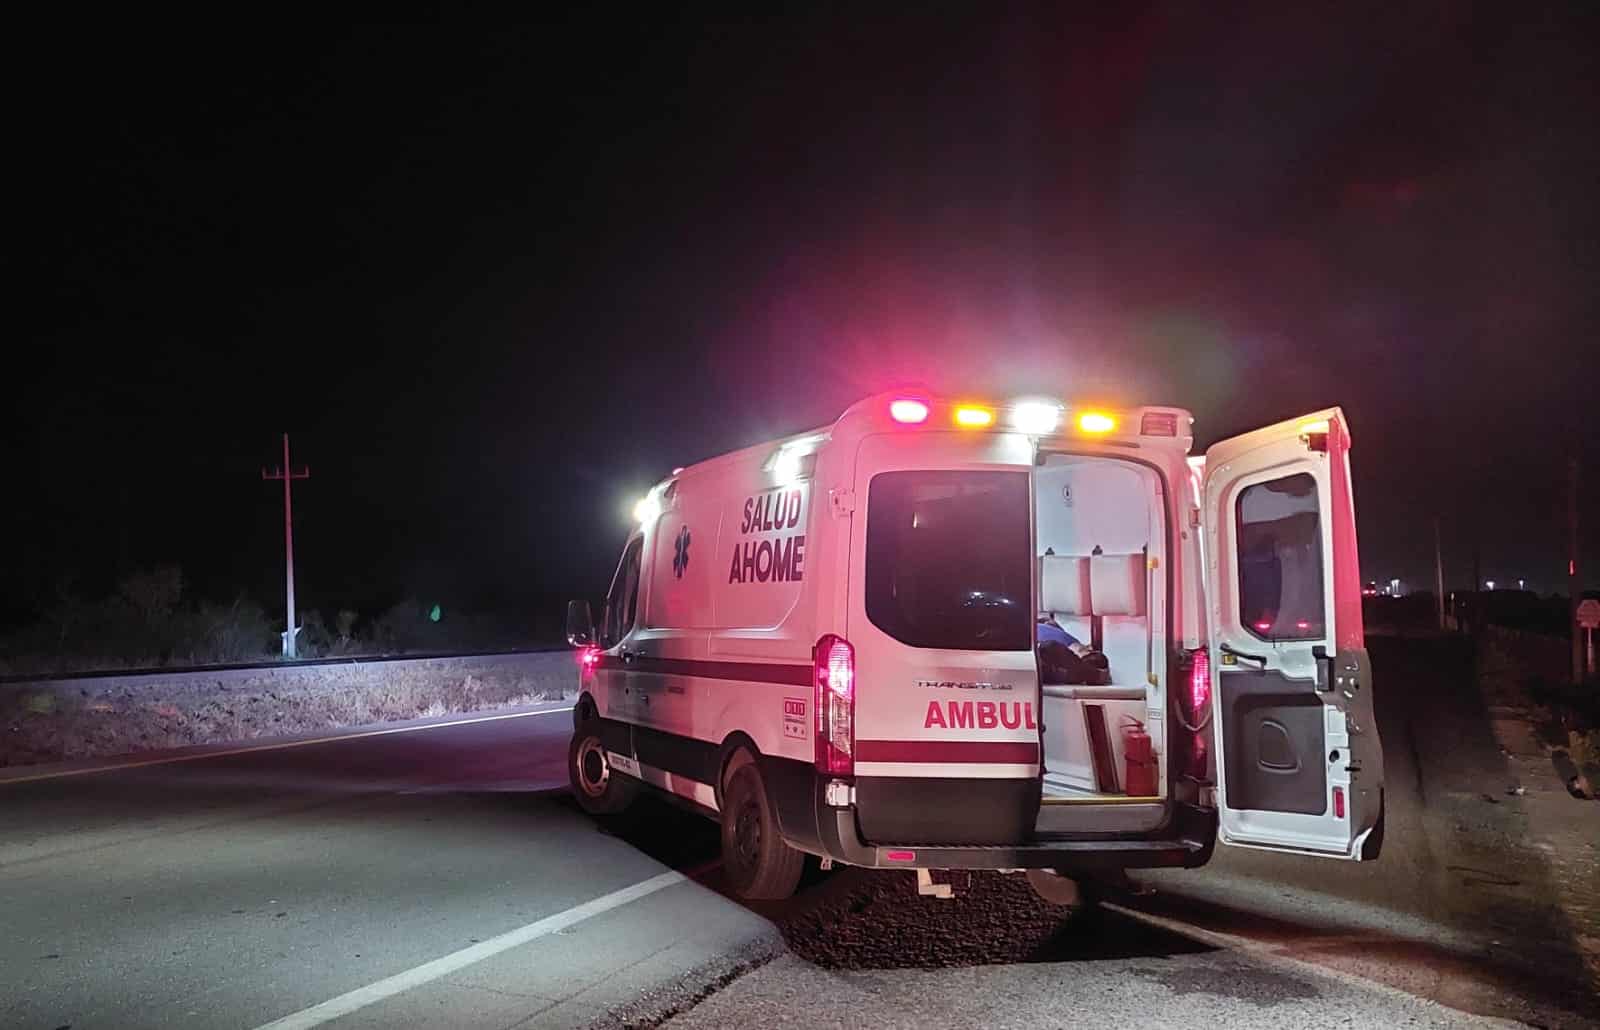 Al lugar acudieron paramédicos de los Servicios de Urgencias Médicas Municipales de Ahome.